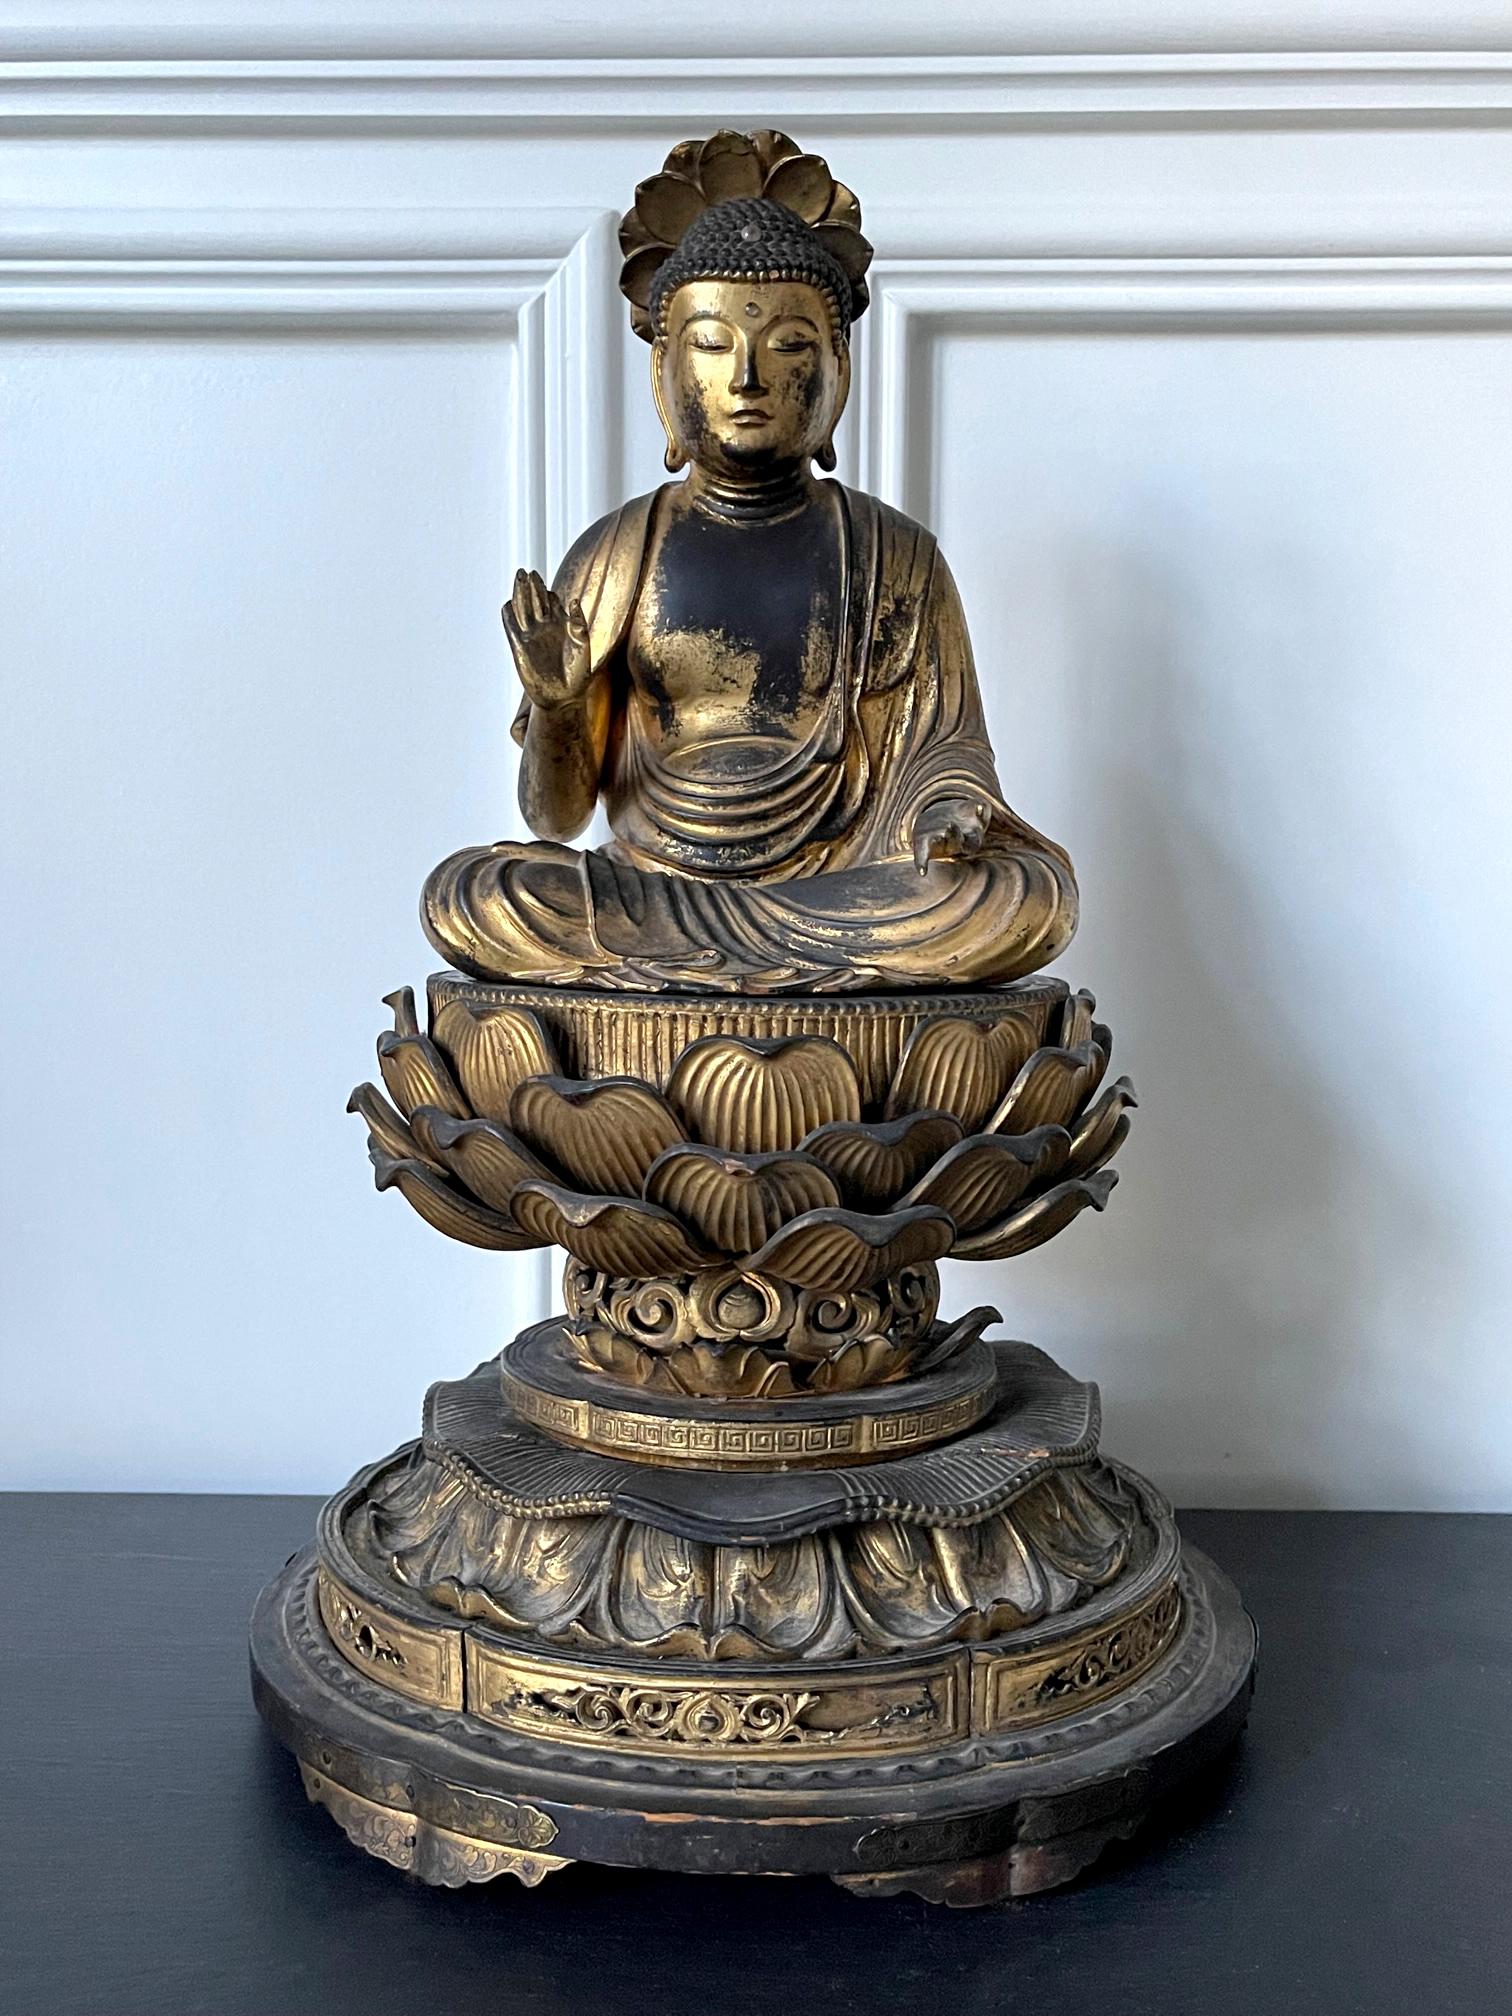 Eine japanische holzgeschnitzte Amitabha (Amida) Buddha-Statue mit restlicher vergoldeter Oberfläche um das 19. Jahrhundert (späte Edo-Zeit). Der Buddha sitzt in der Padmasana-Position auf einem erhöhten doppelten Lotusthron unter einem kleinen